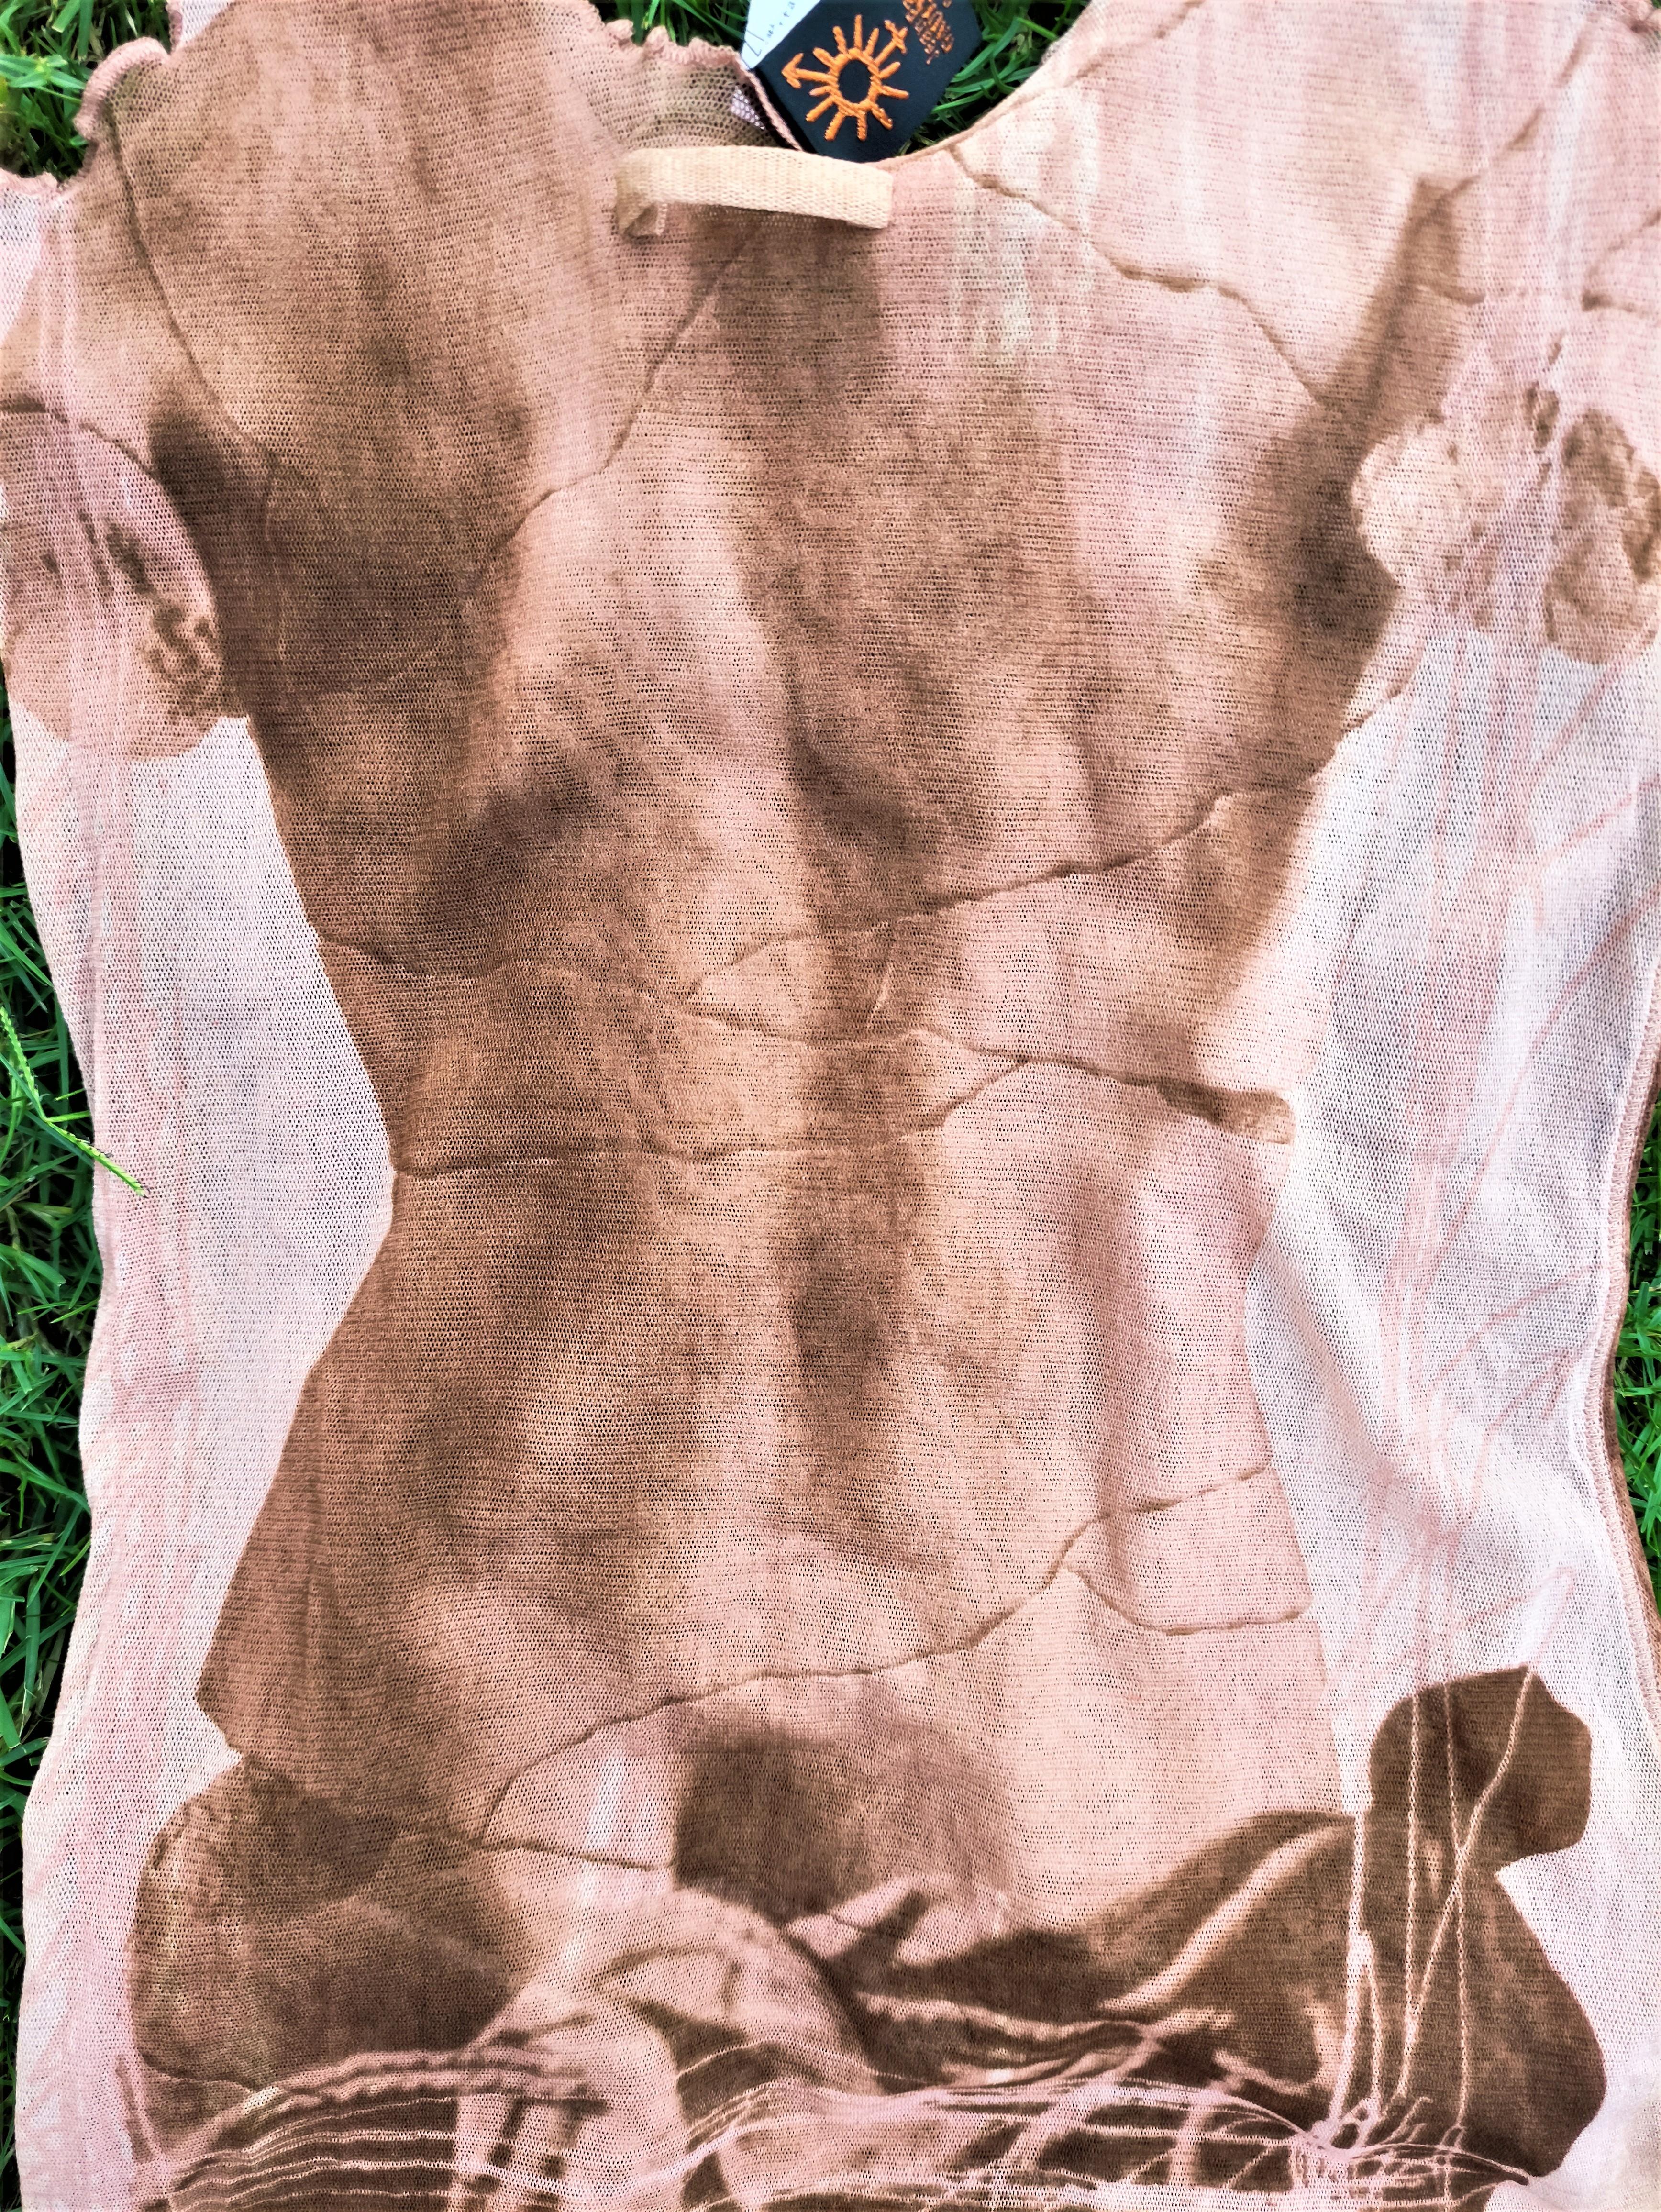 Jean Paul Gaultier Venus De Milo Torso Optical Illusion Nude Sculpture Dress Set For Sale 1